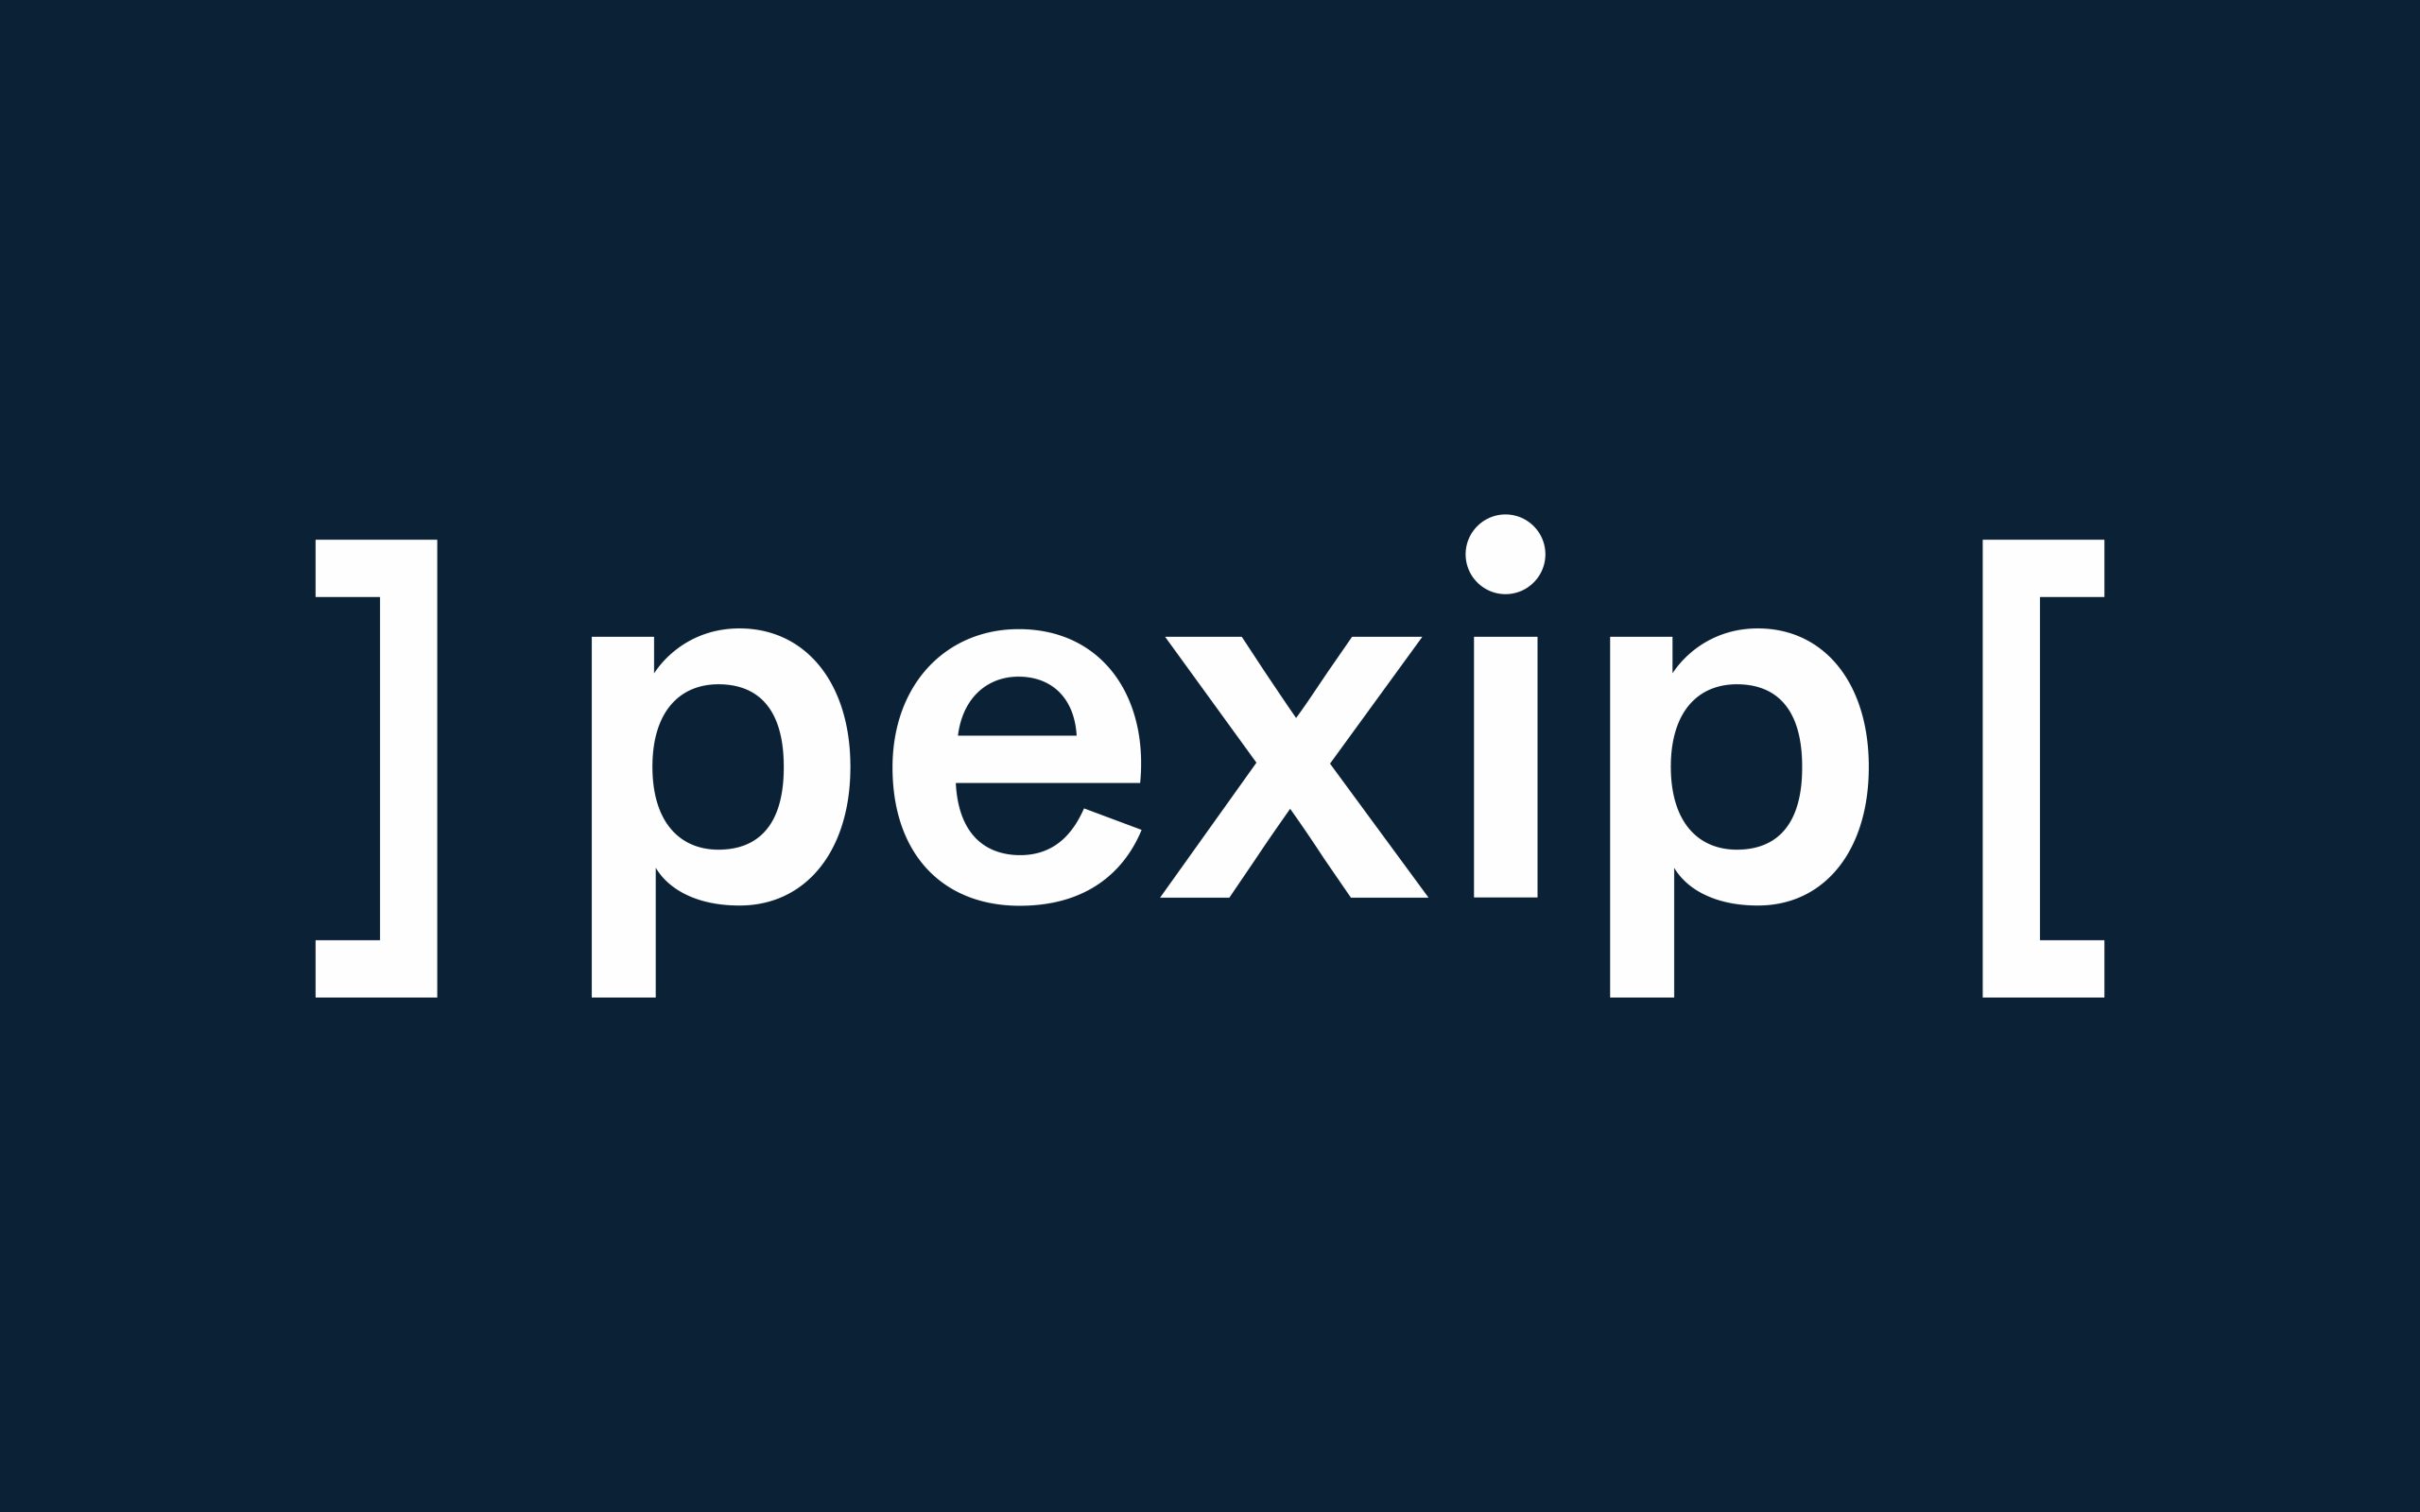 AVN Partnerschaft mit Pexip